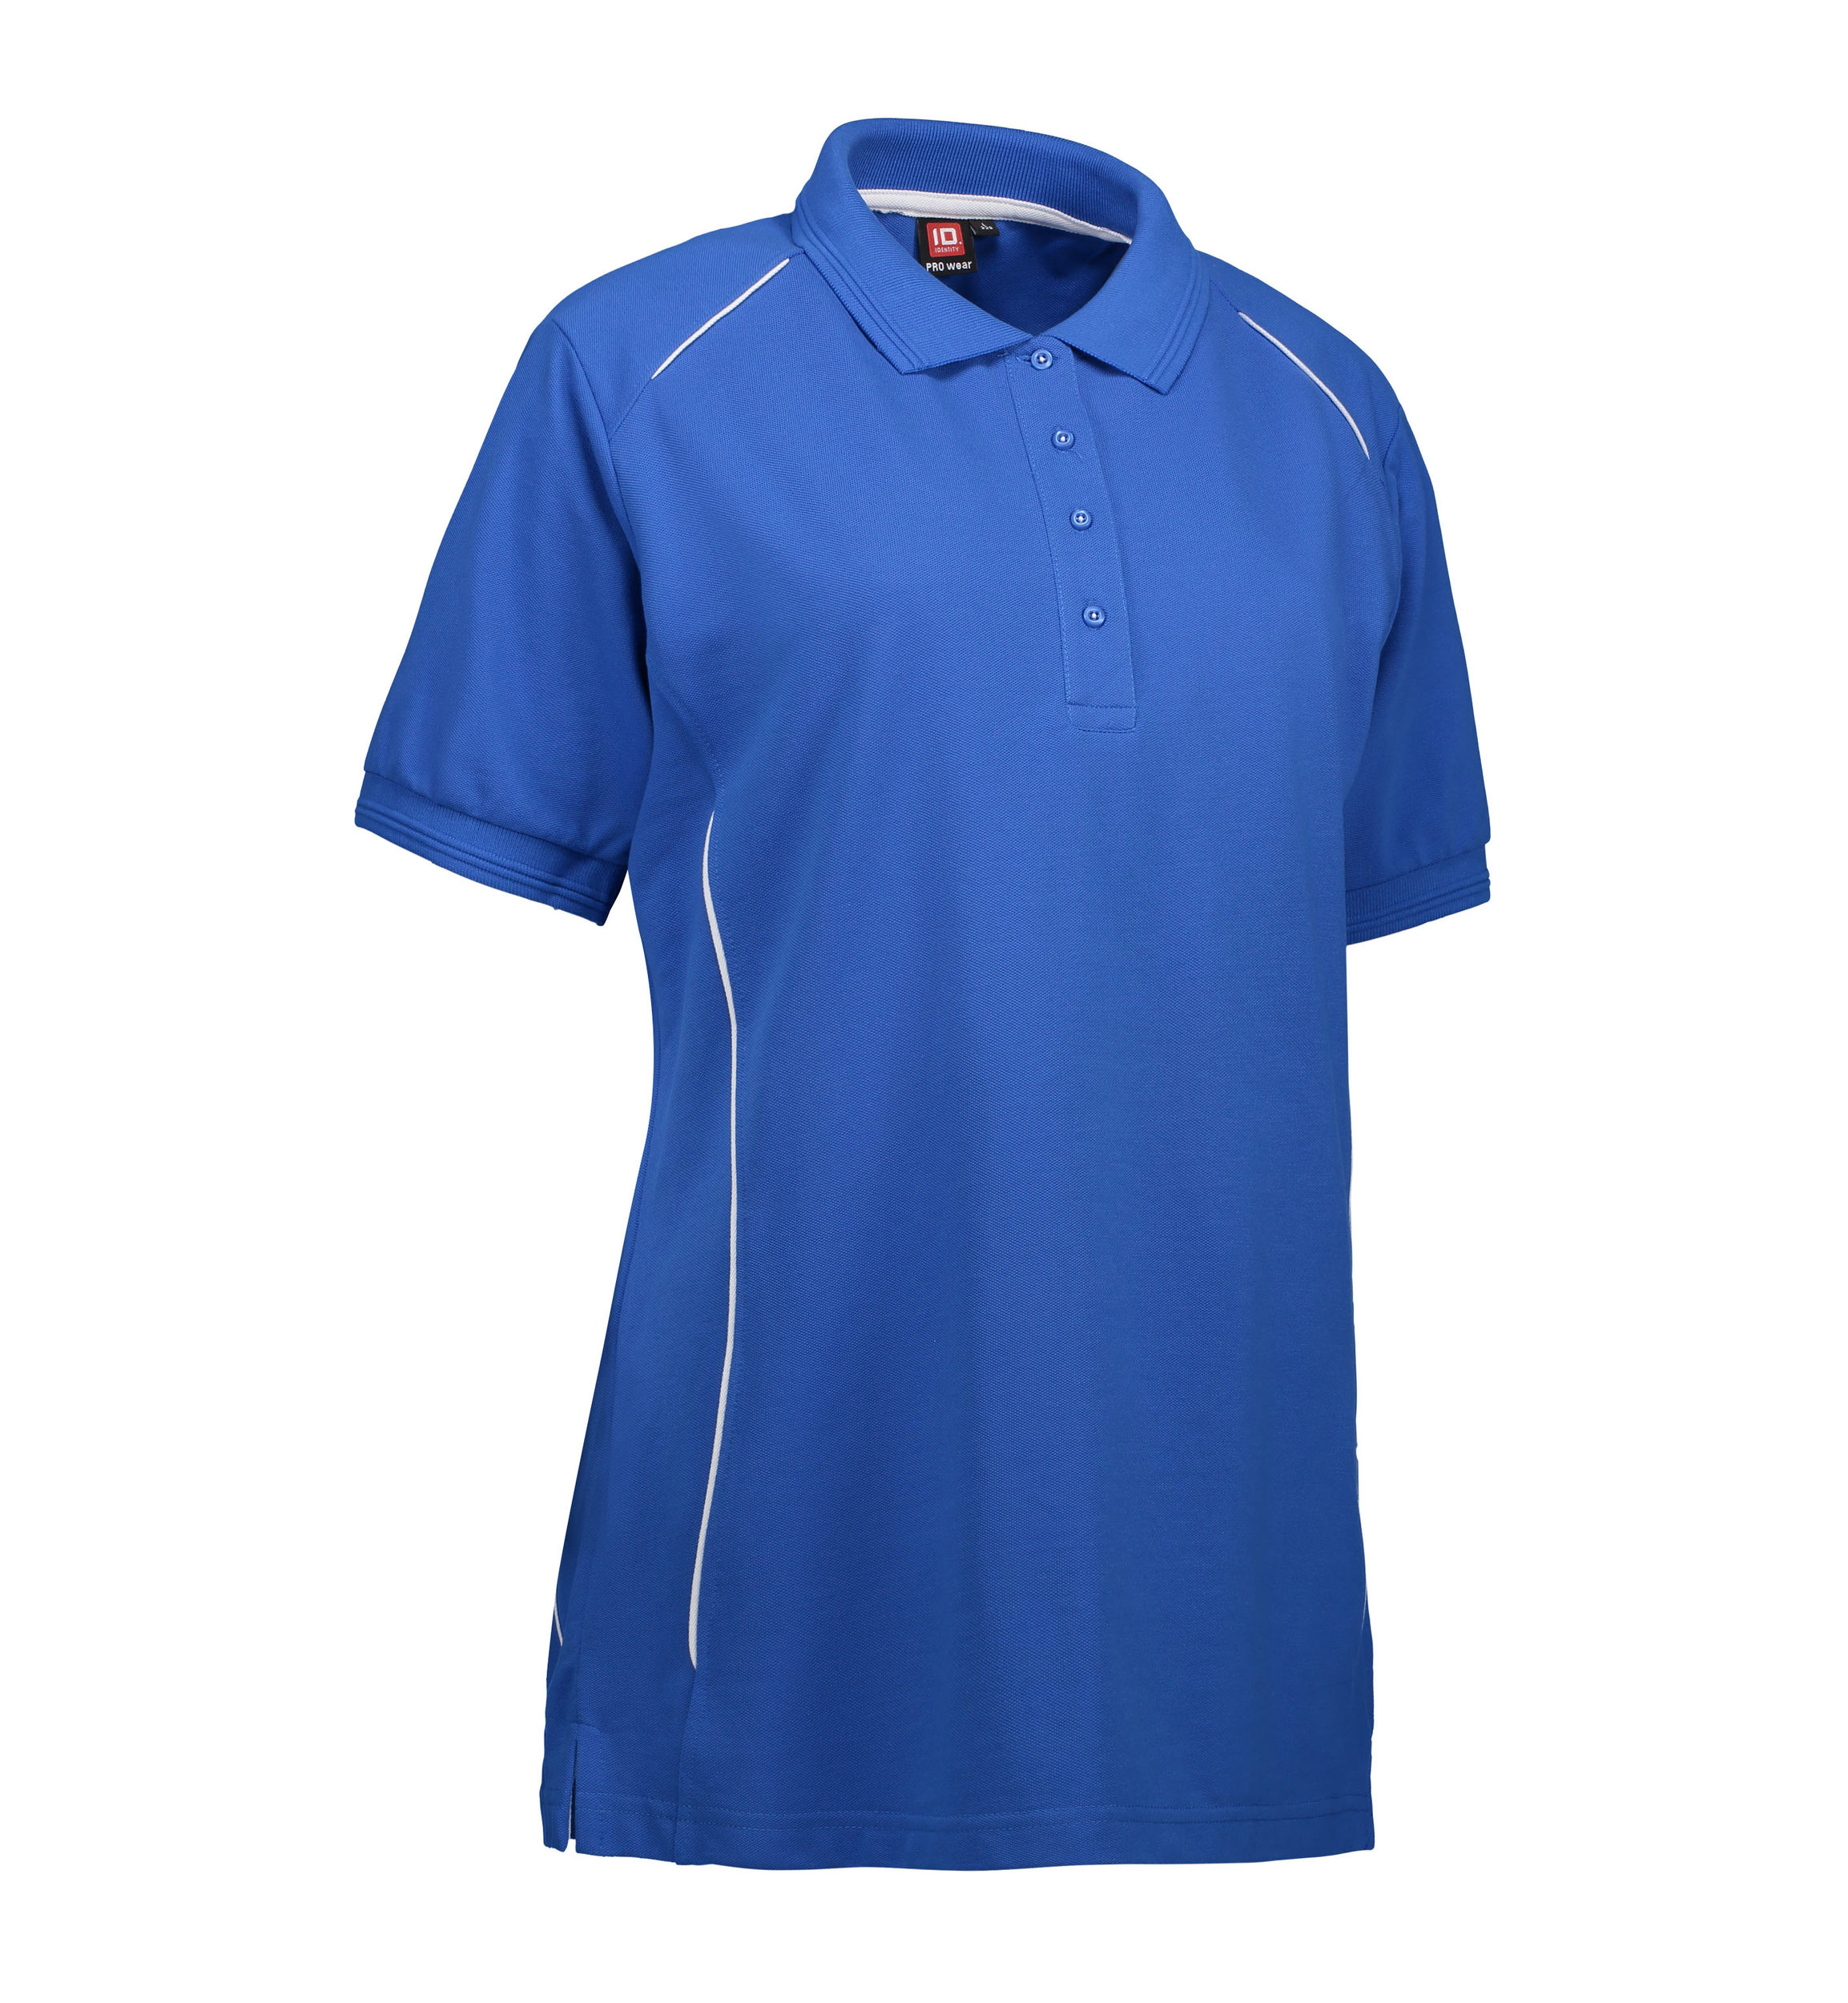 Se Slidstærk polo t-shirt i blå til damer - 4XL hos Sygeplejebutikken.dk